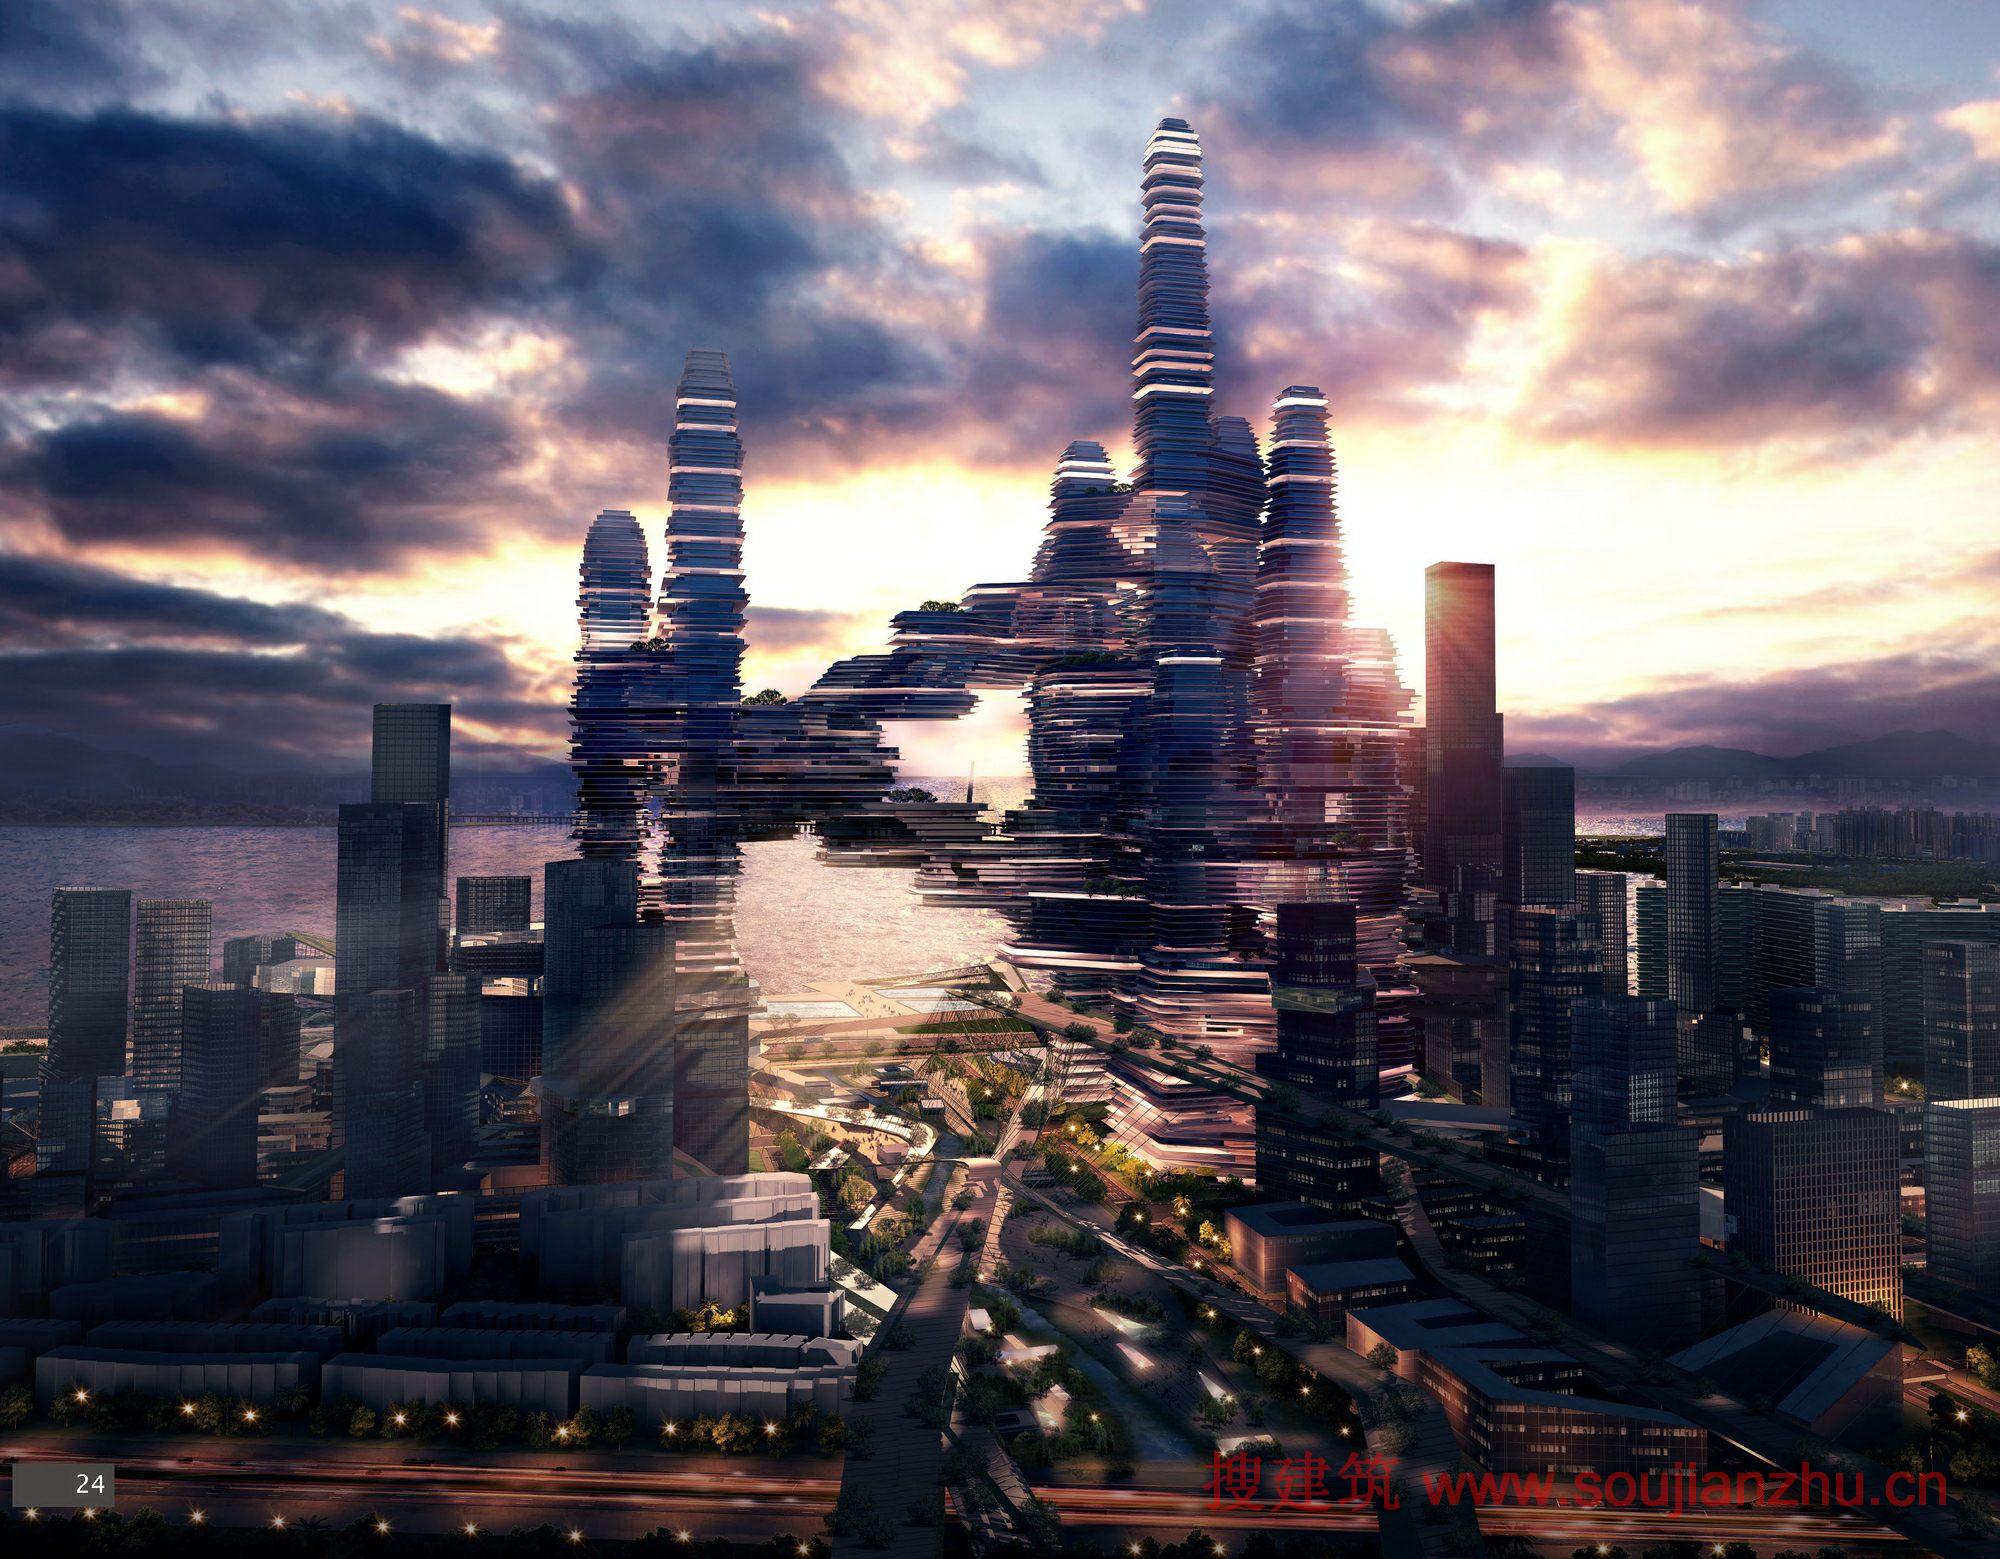 搜建筑网 -- 广东·深圳湾超级城市设计竞赛最高奖方案---UFO + CR-design